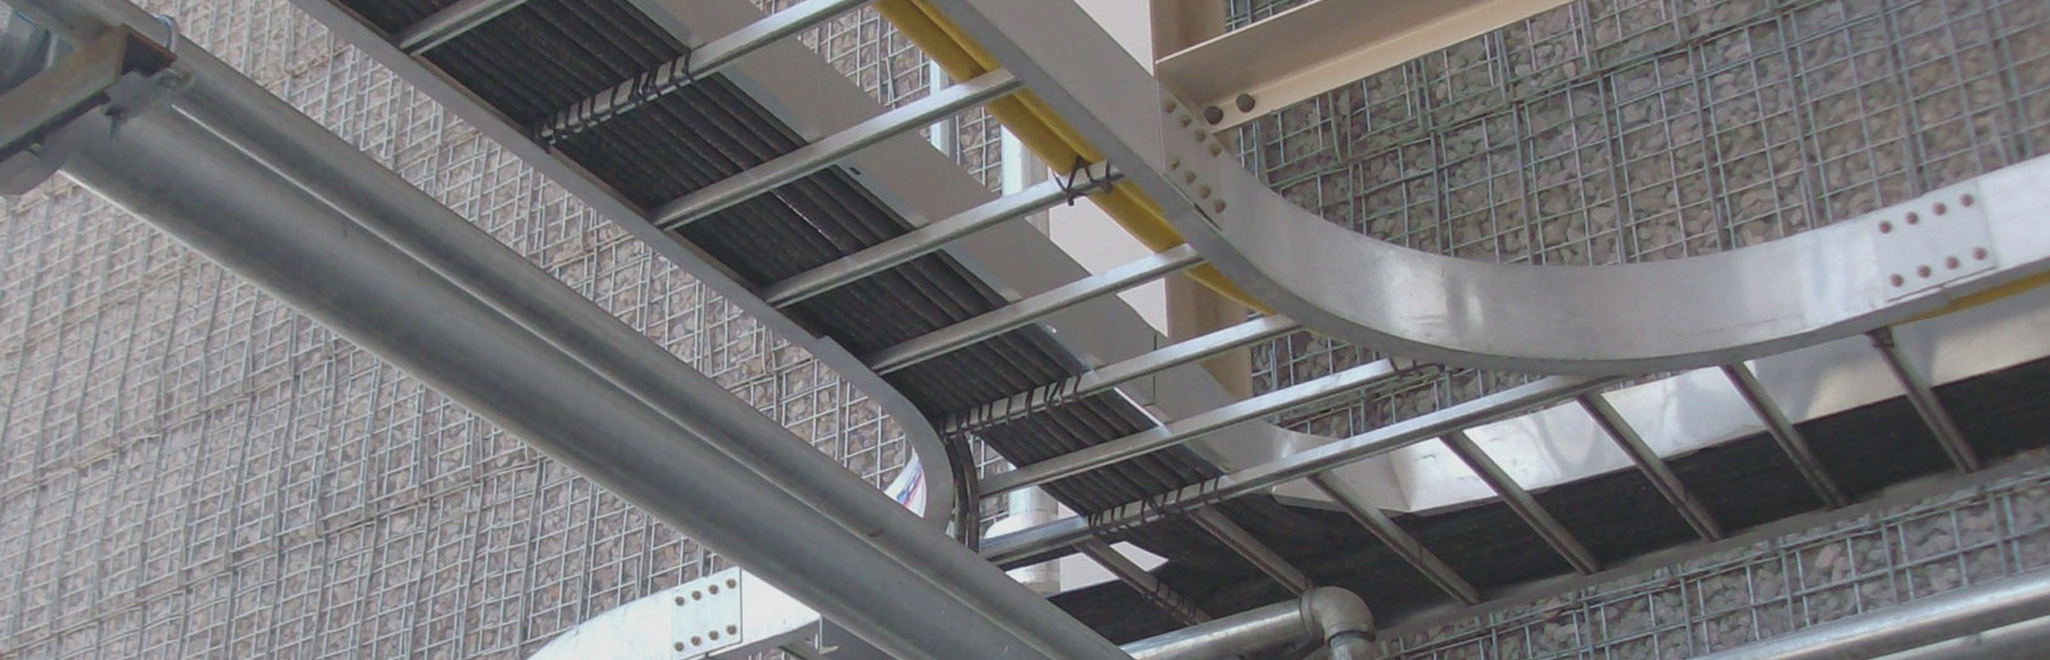 گروه صنعتی کاوه تولید کننده سینی کابل، نردبان کابل، لوله های برقی ، سازه نیروگاه خورشیدی و  کلیه اتصالات مربوطه